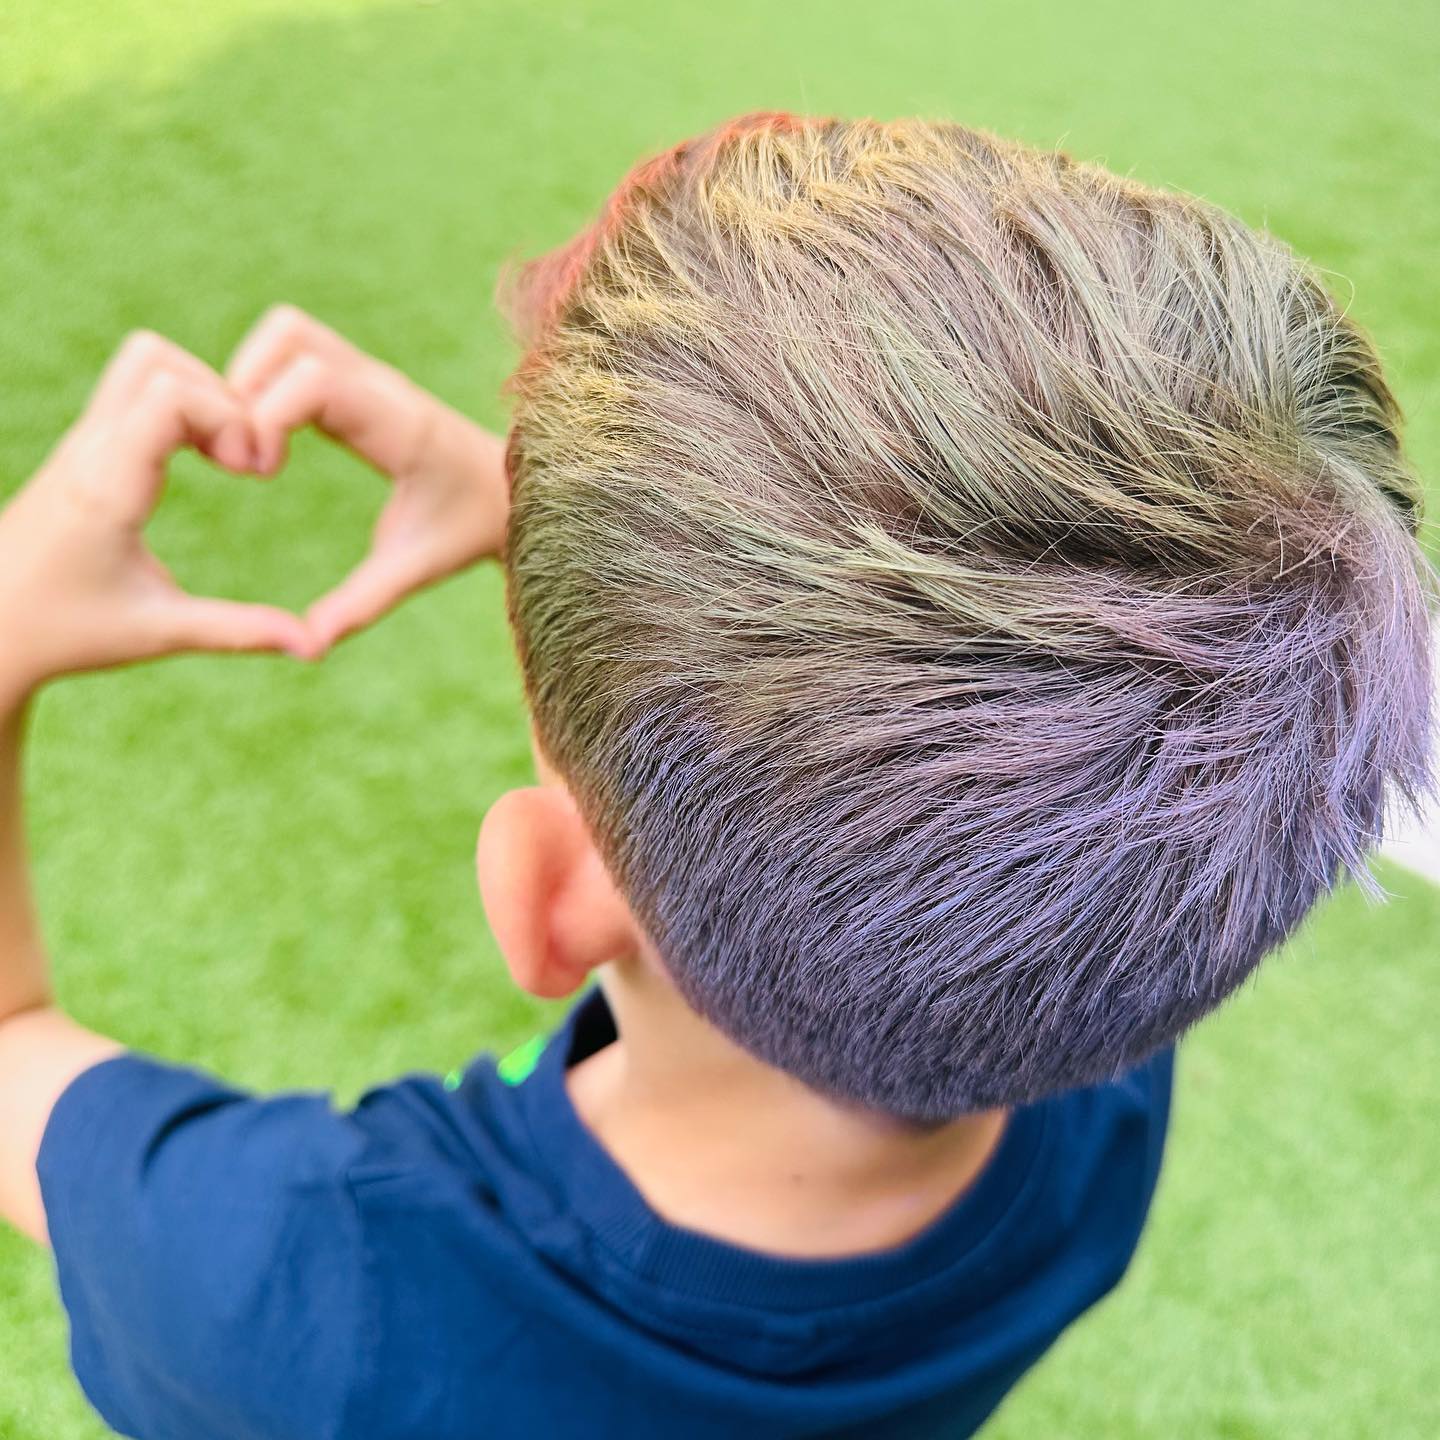 Holly Willoughby hat ein seltenes Bild ihres Sohnes mit Regenbogenhaar geteilt, um Pride in der Schule zu feiern